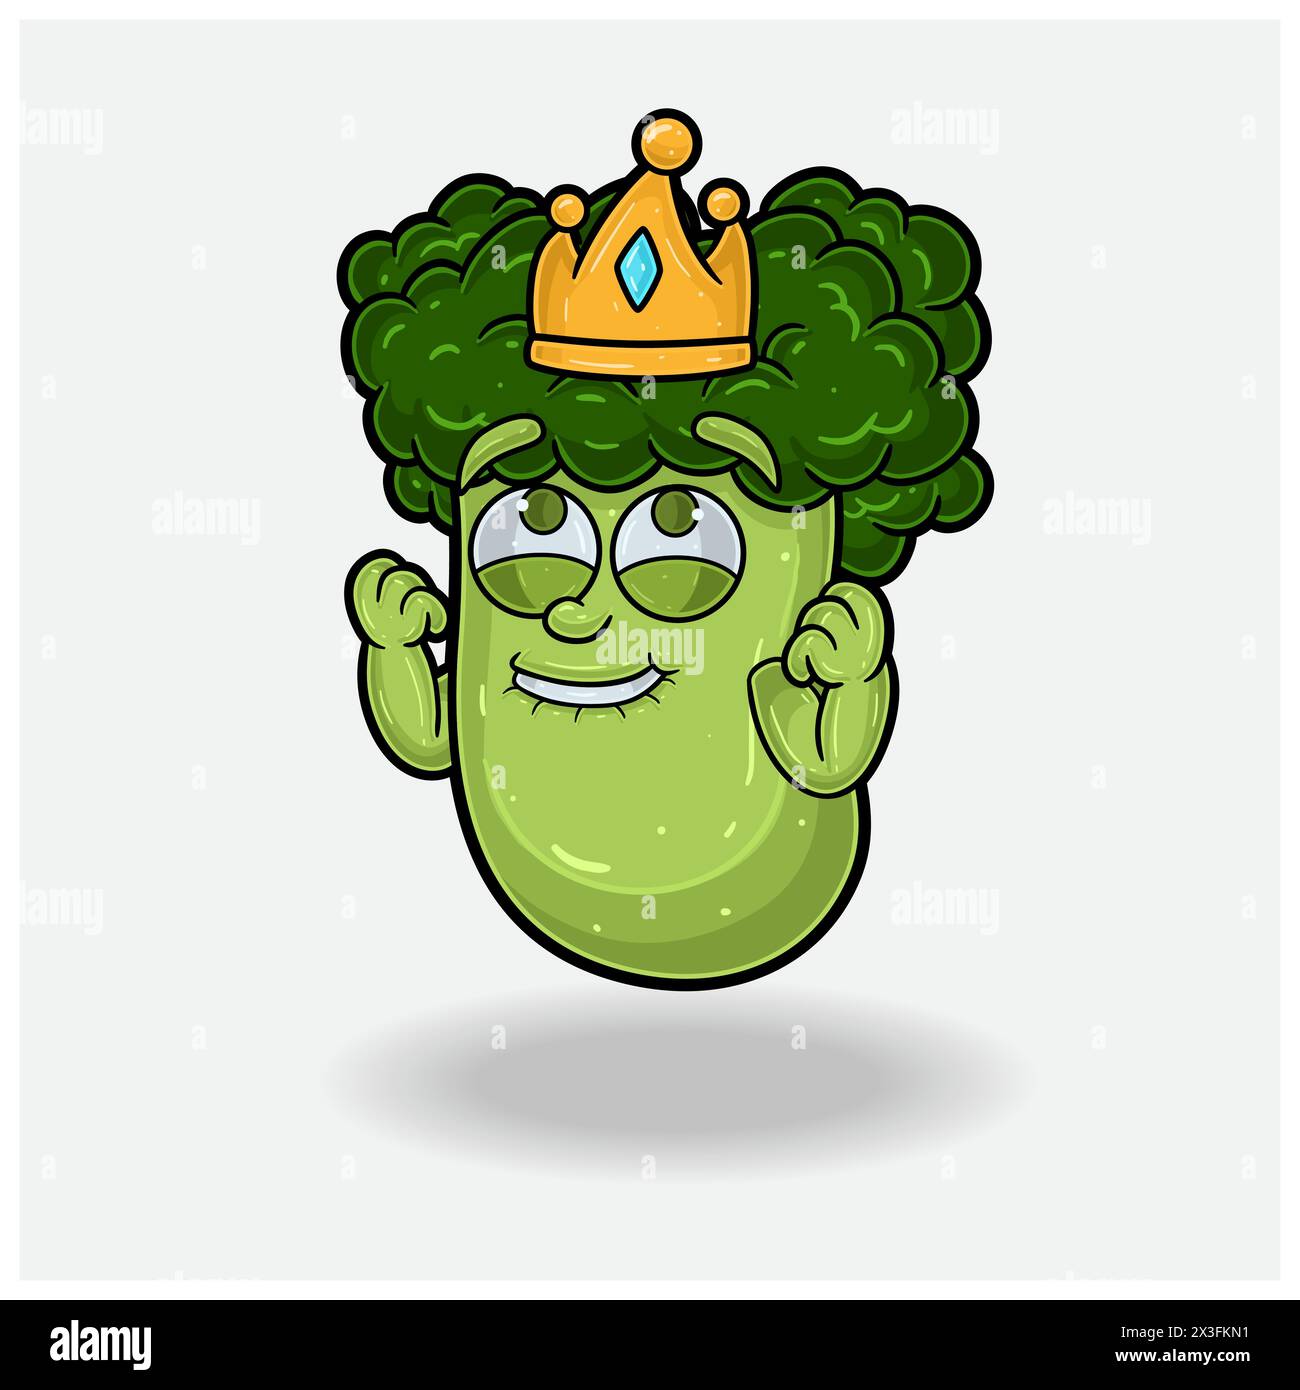 Broccoli Mascot personaggio Cartoon con espressione felice. Illustrazioni vettoriali Illustrazione Vettoriale